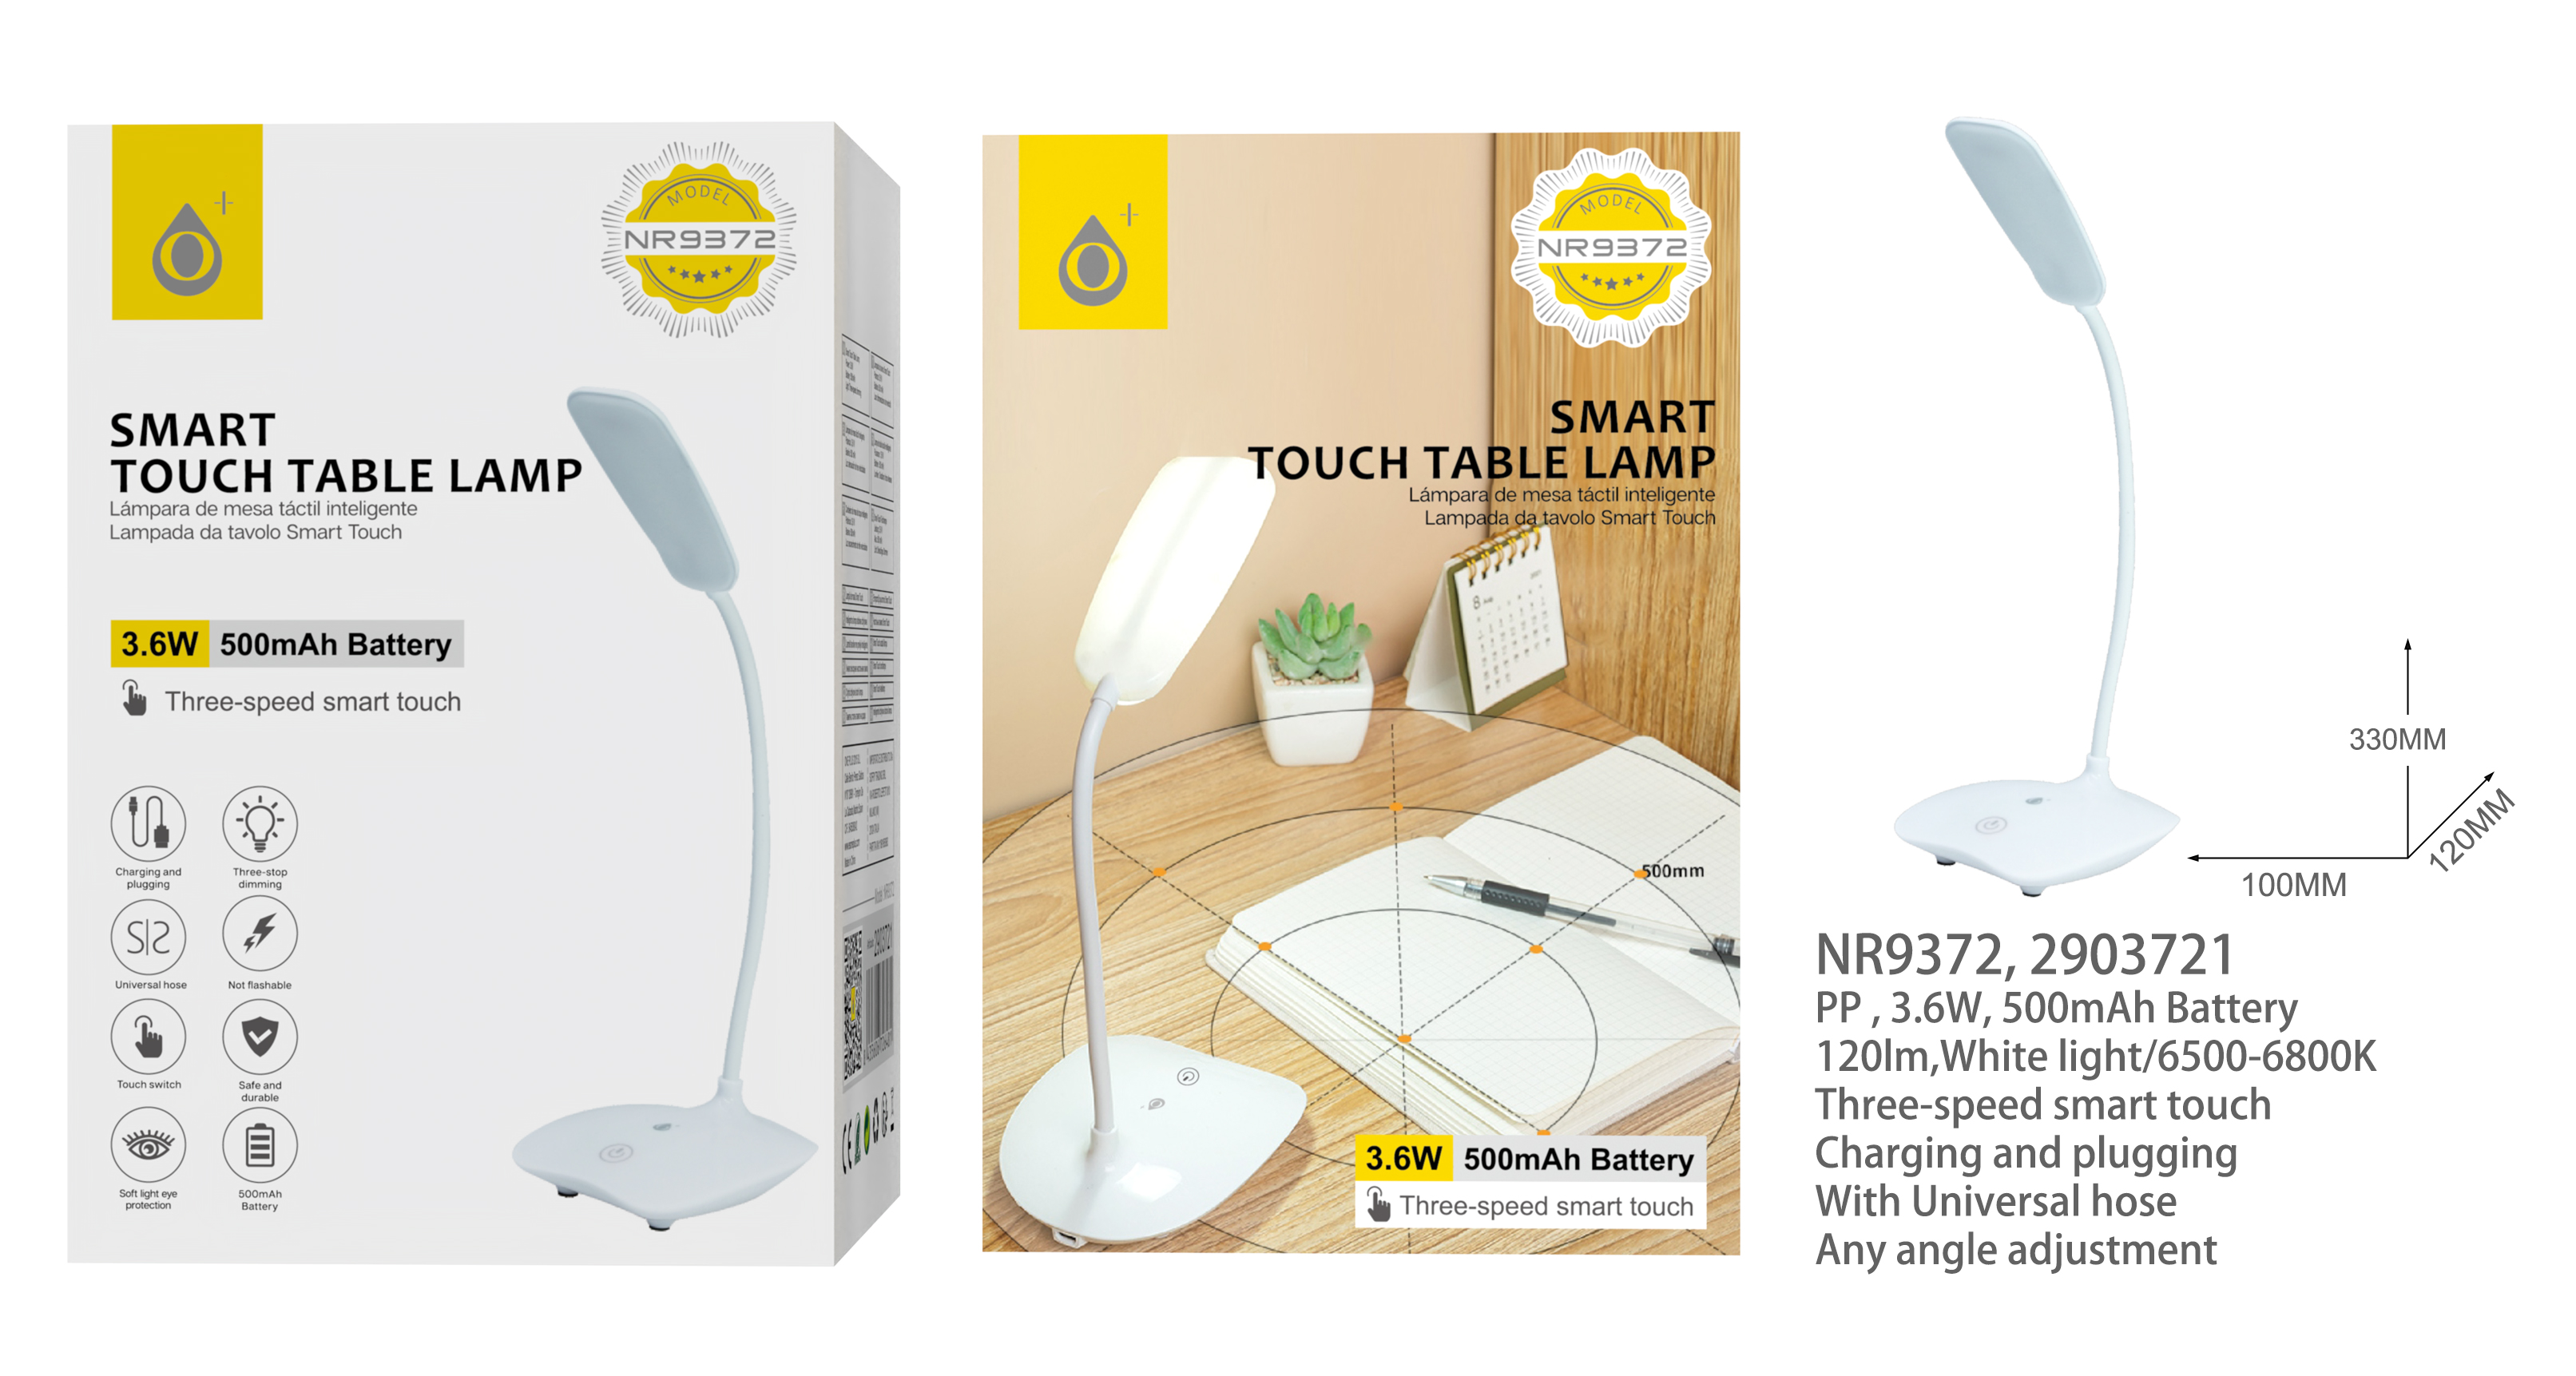 NR9372 BL Lampara de mesa con Panel tactil inteligente, Luz frio 6500-6800K 120lm, Bateria 500mAh, 1